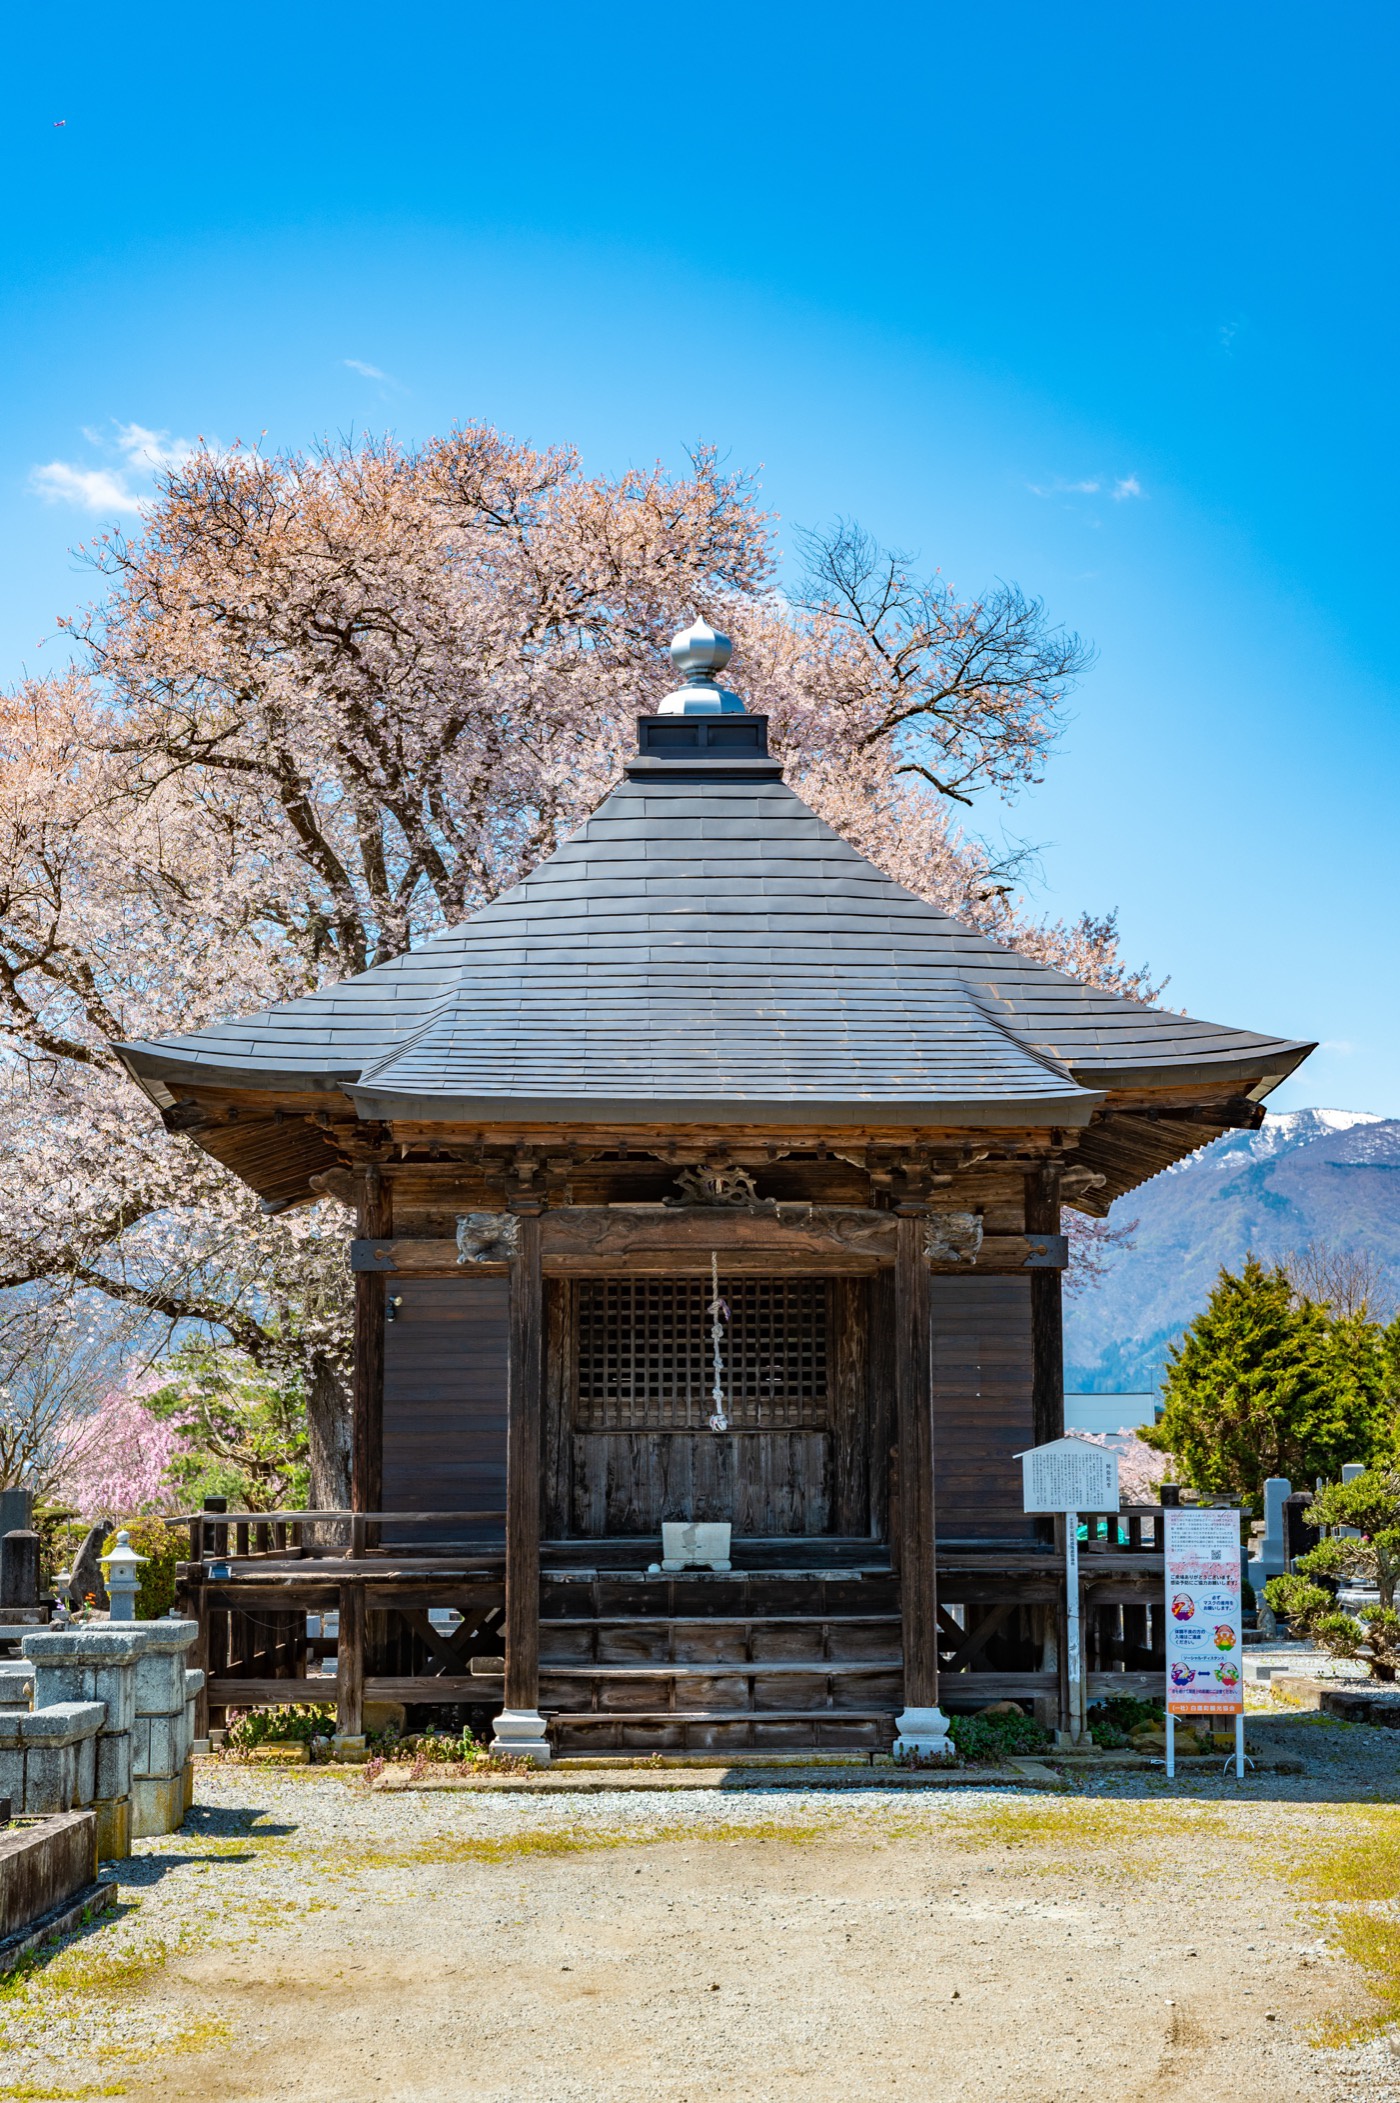 置賜さくら回廊「称名寺阿弥陀堂の桜」 | 白鷹町 | ヤマガタイメージズ 